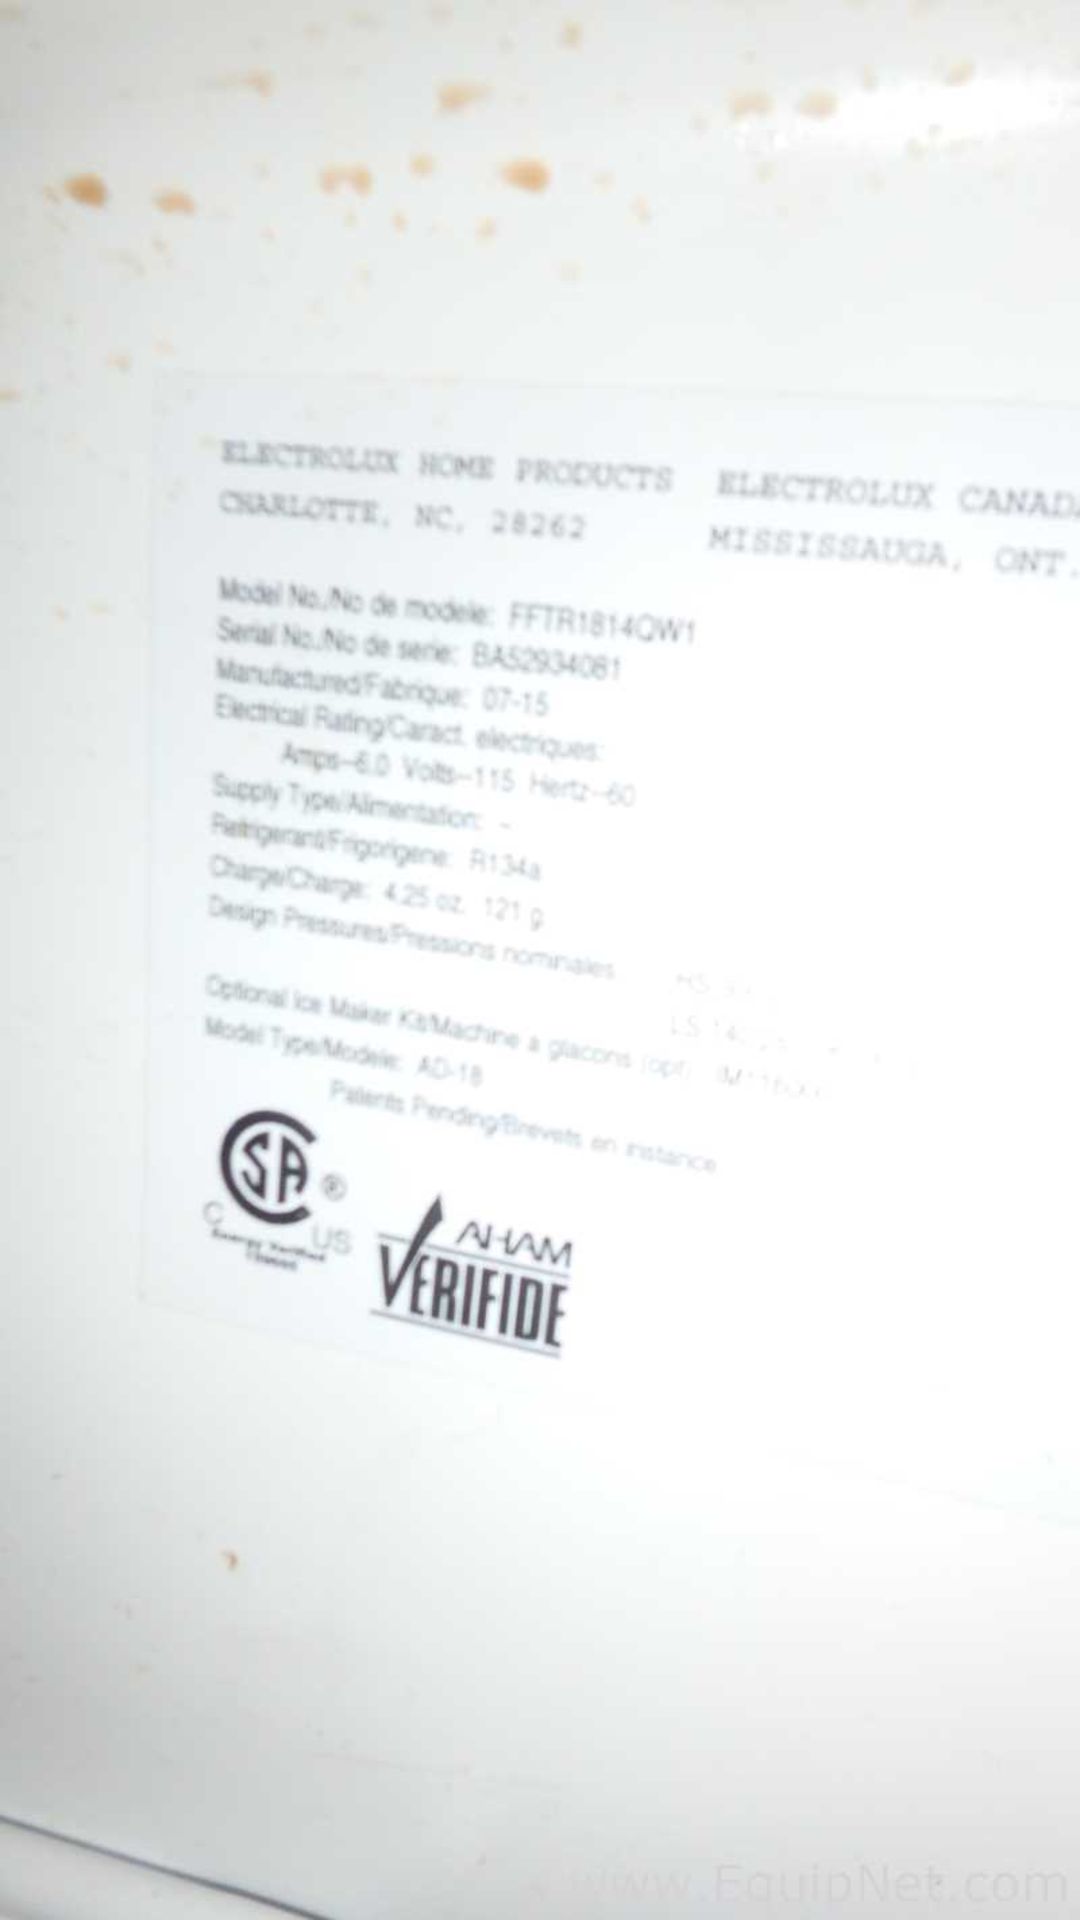 Electrolux FFTR1814QW1 Refrigerator - Image 10 of 24